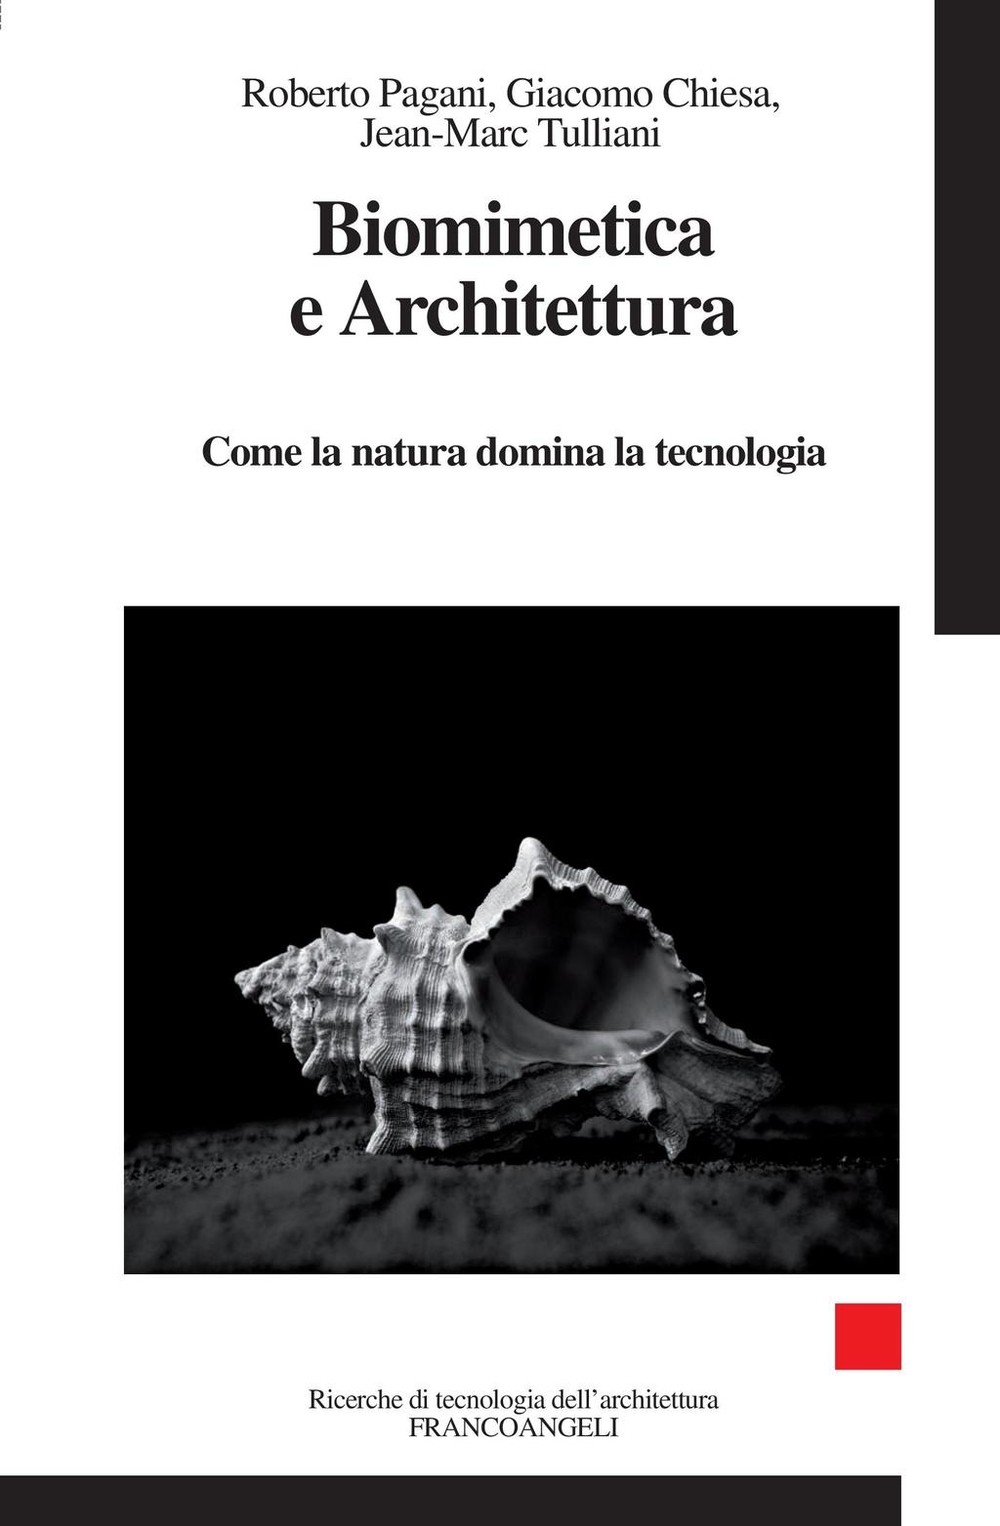 Biomimetica e Architettura. Come la natura domina la tecnologia - Librerie.coop